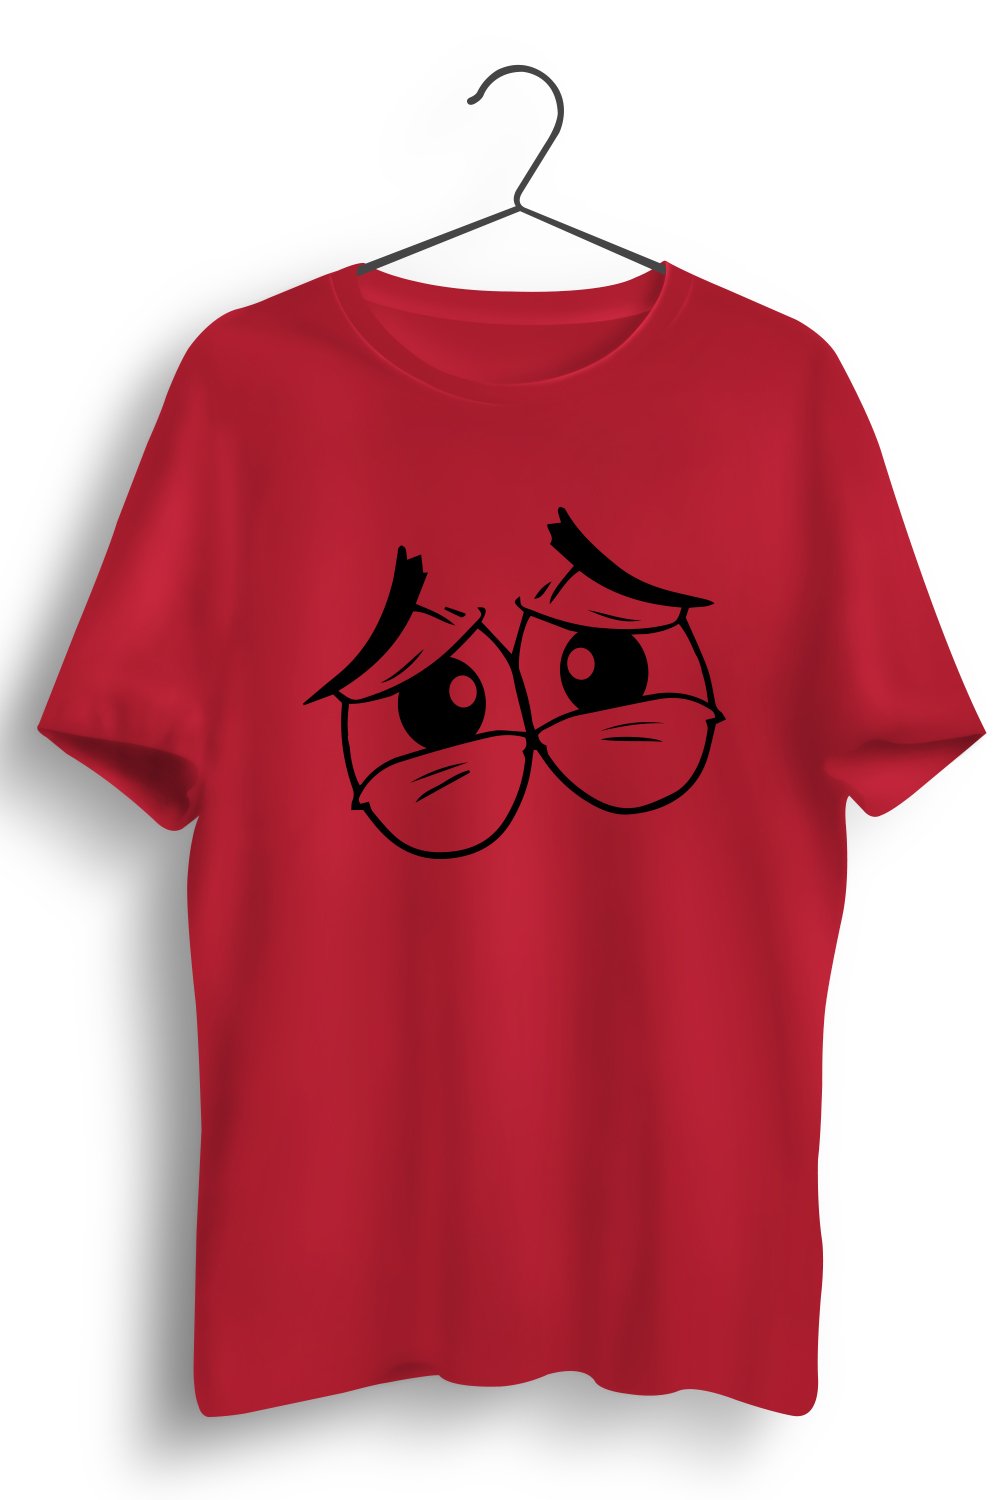 Sad Eyes Graphic Printed Red Tshirt